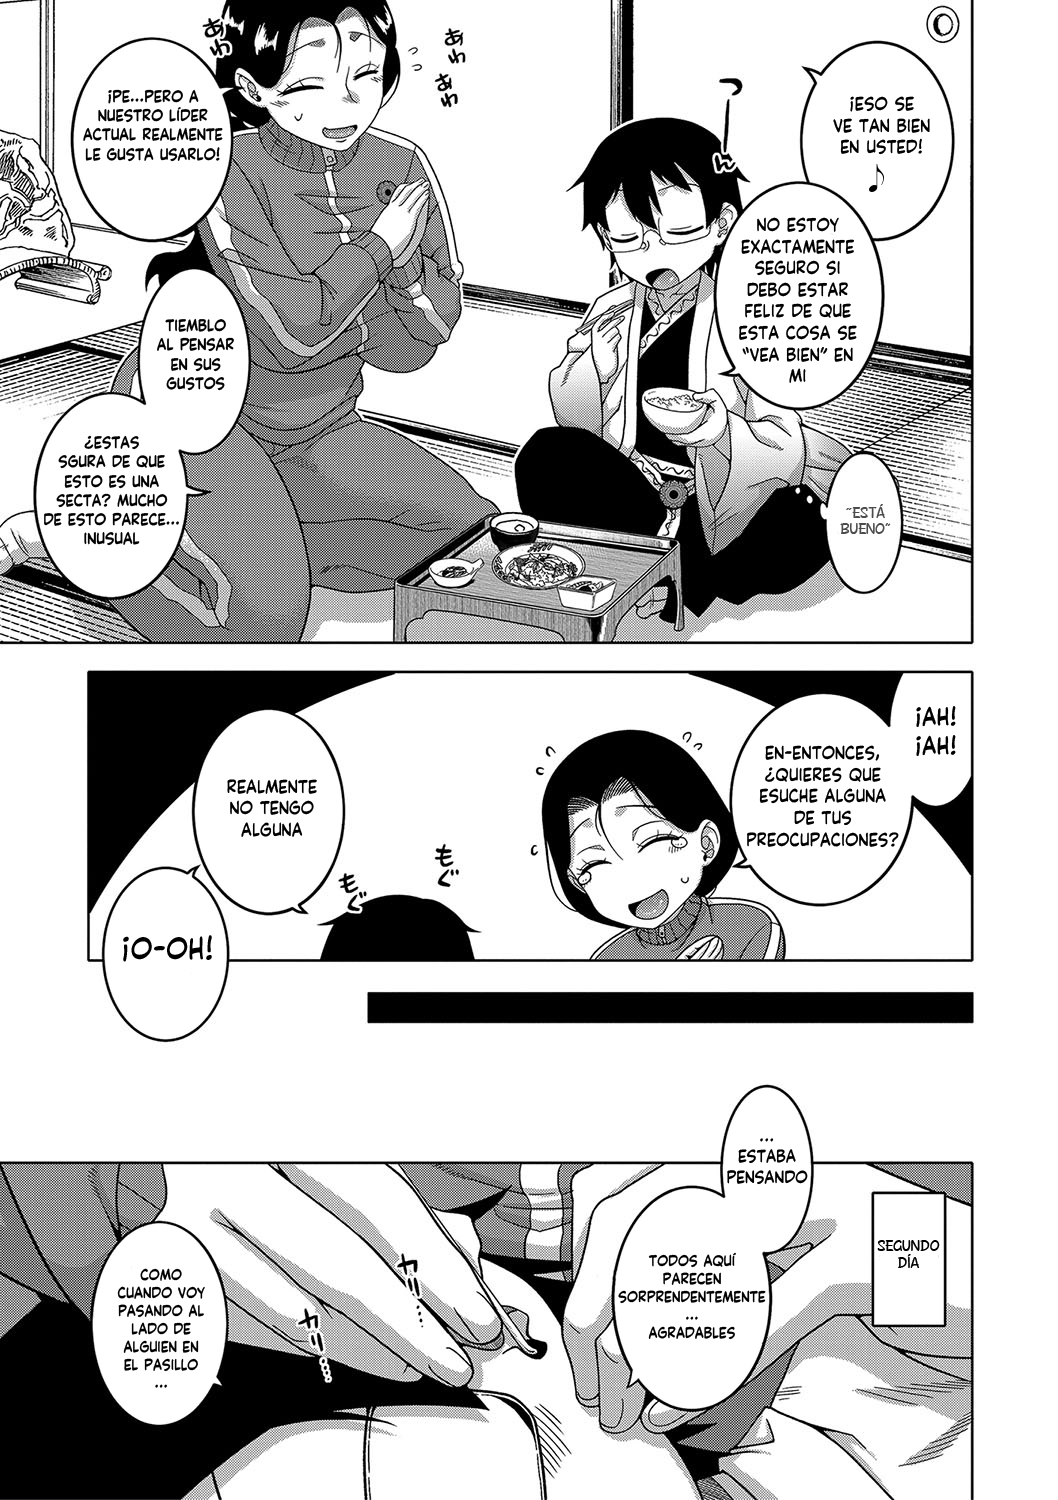 Manga KAMI-SAMA NO TSUKURIKATA-THE MAKING OF A CULT LEADER Chapter 1 image number 3